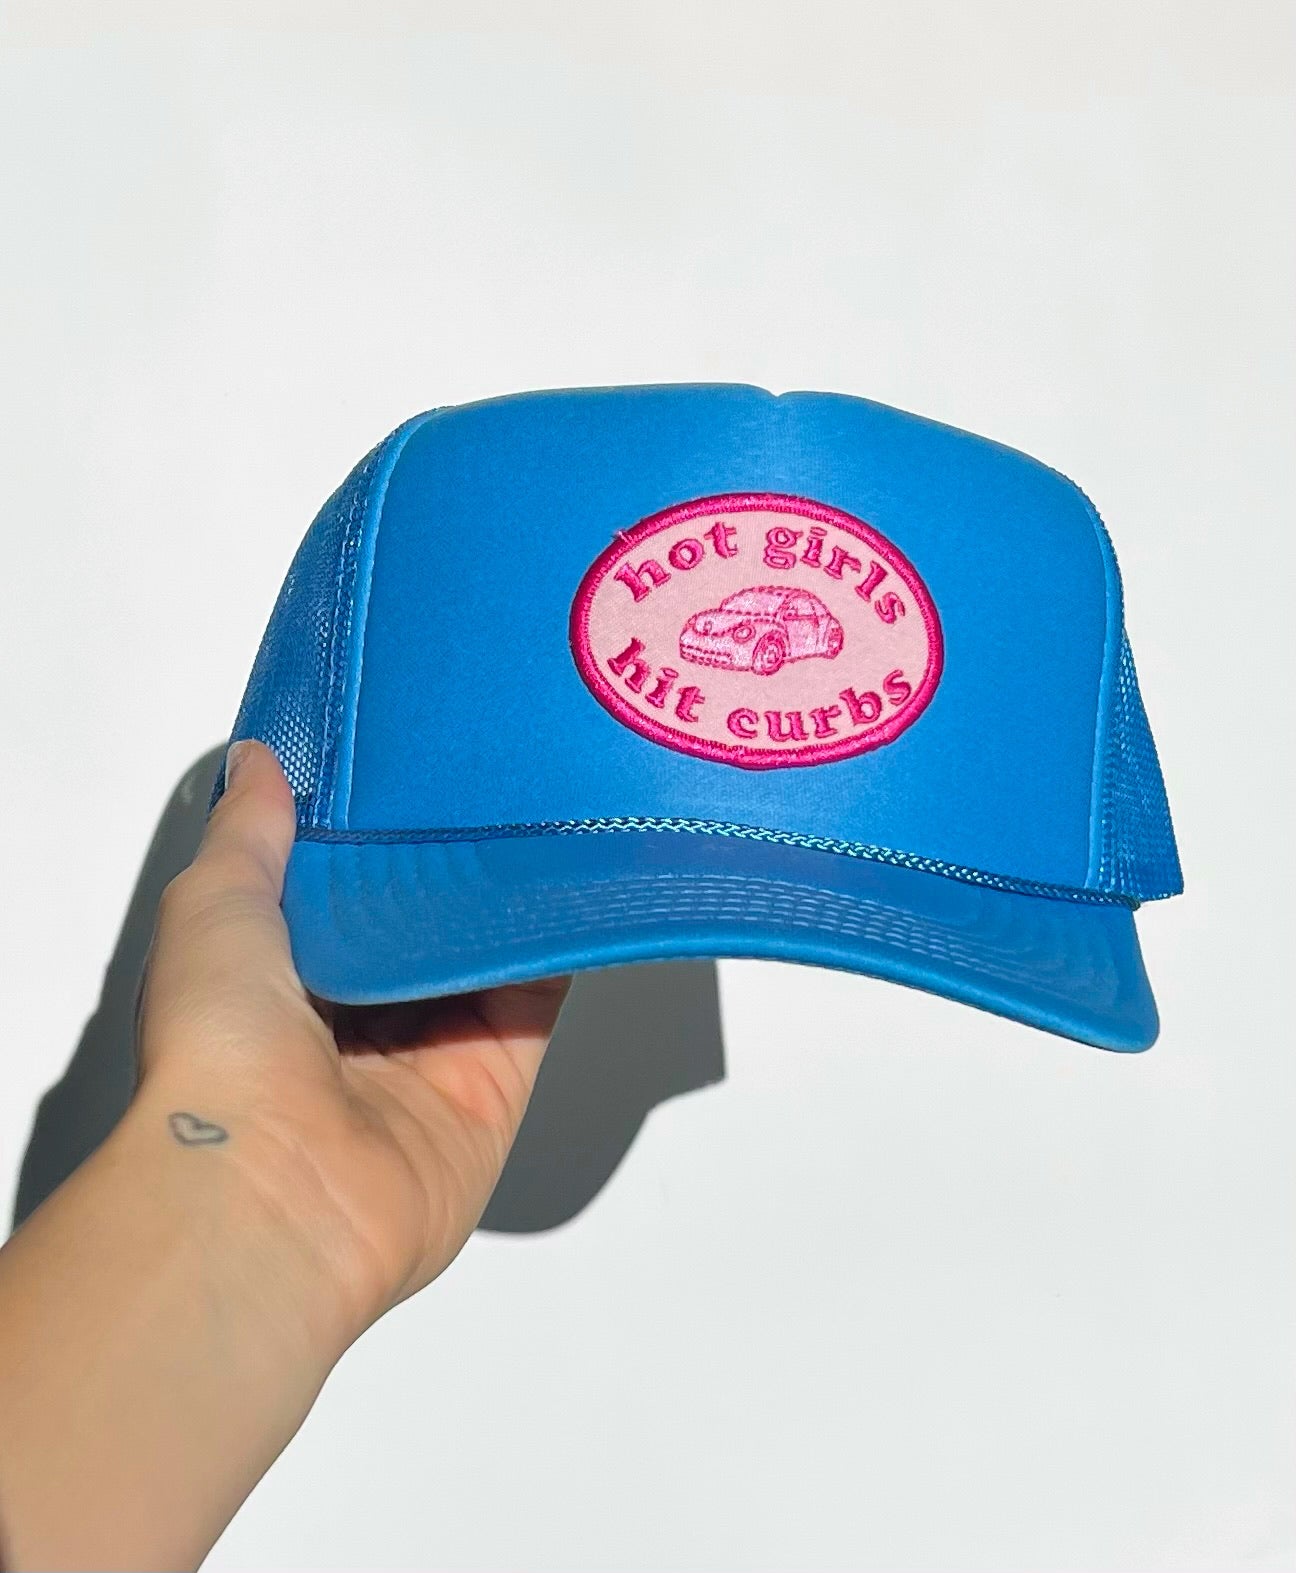 "Hot Girls Hit Curbs" Trucker Hat